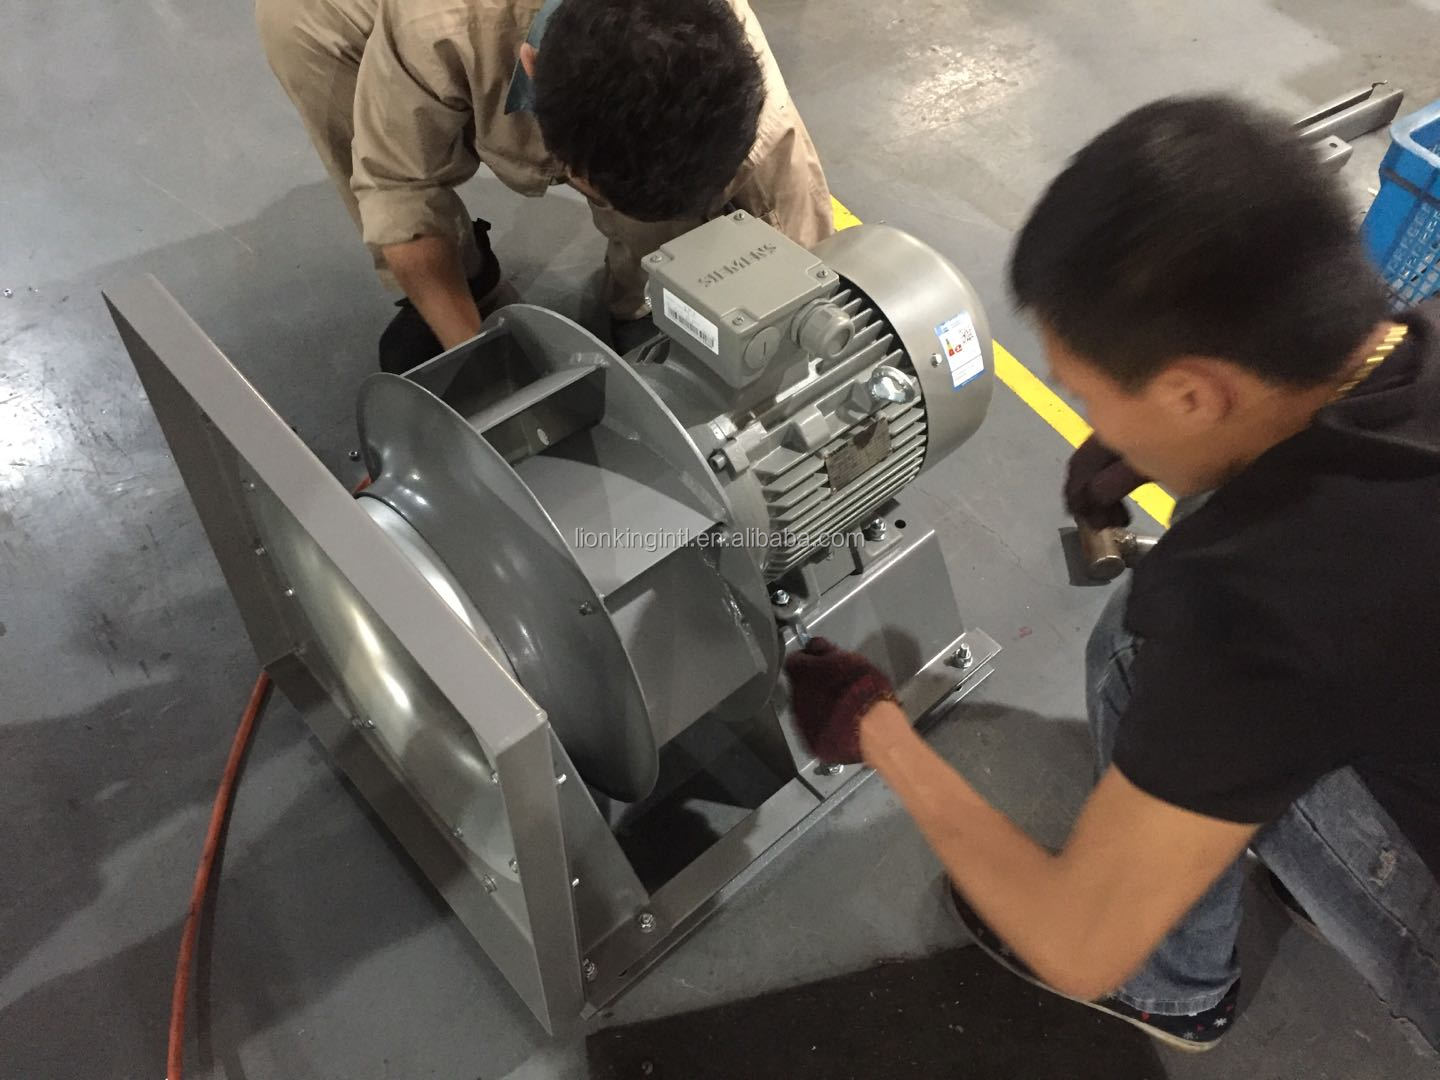 Enote za obdelavo zraka uporabljajo plenumski ventilator nazaj centrifugalni rotor